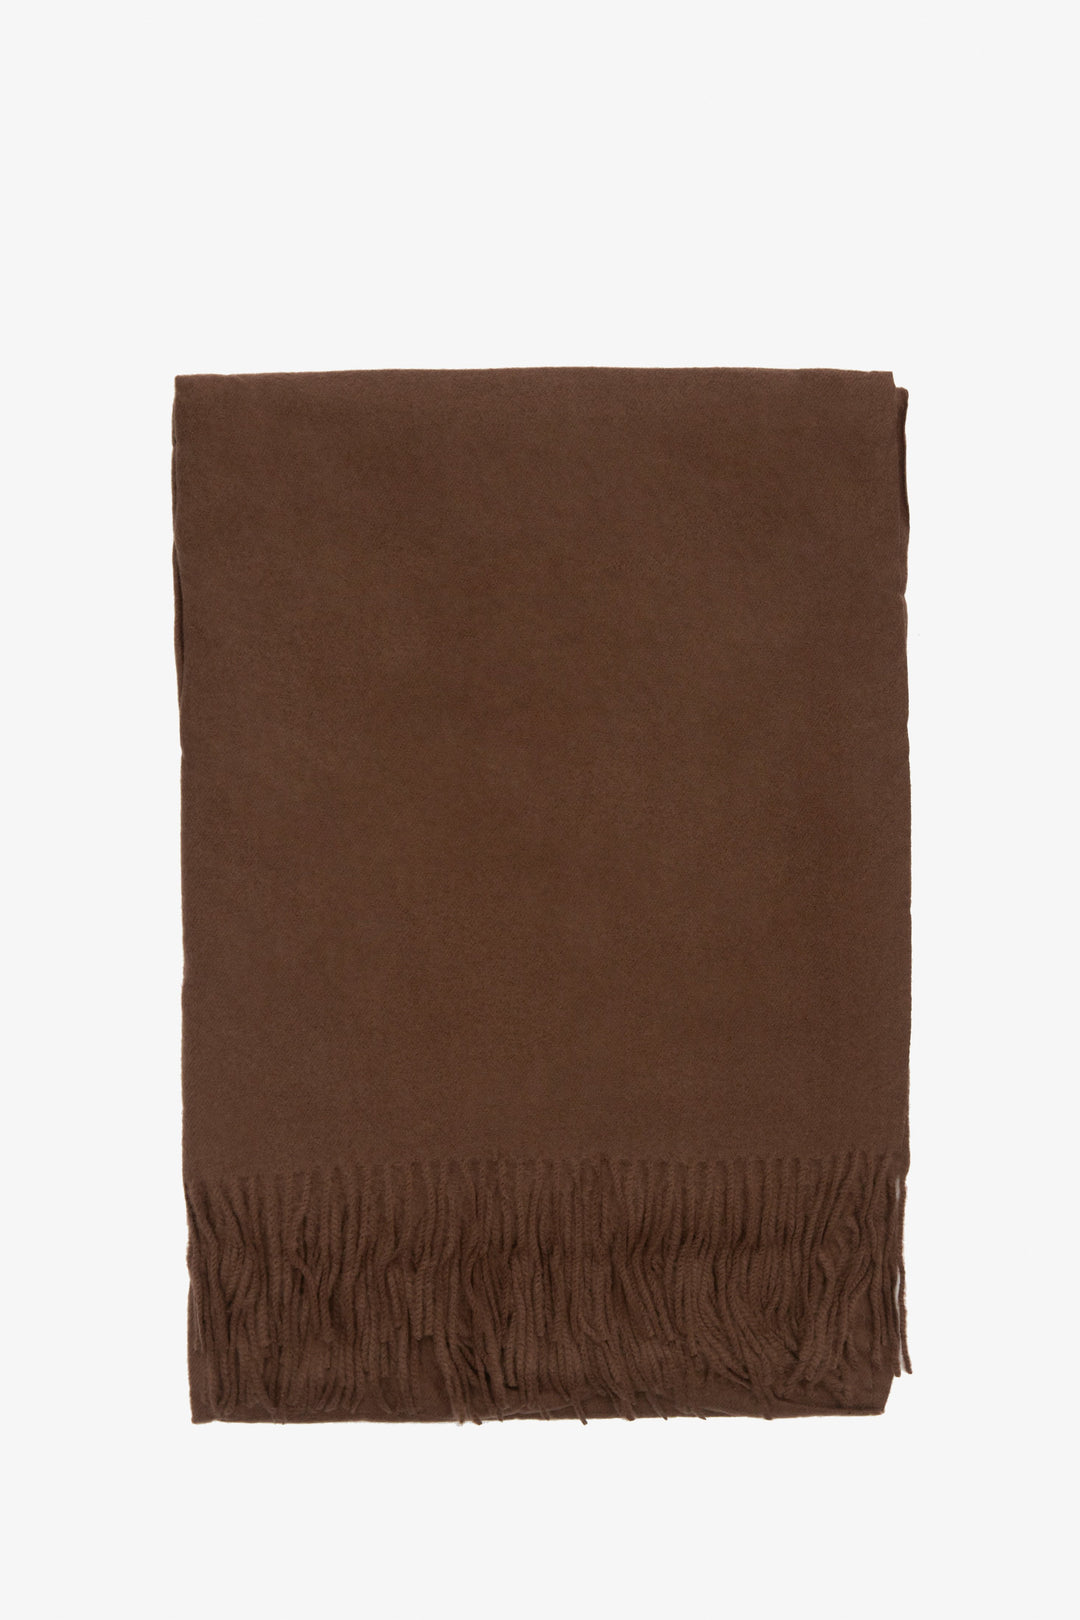 Women's dark brown scarf by Estro.